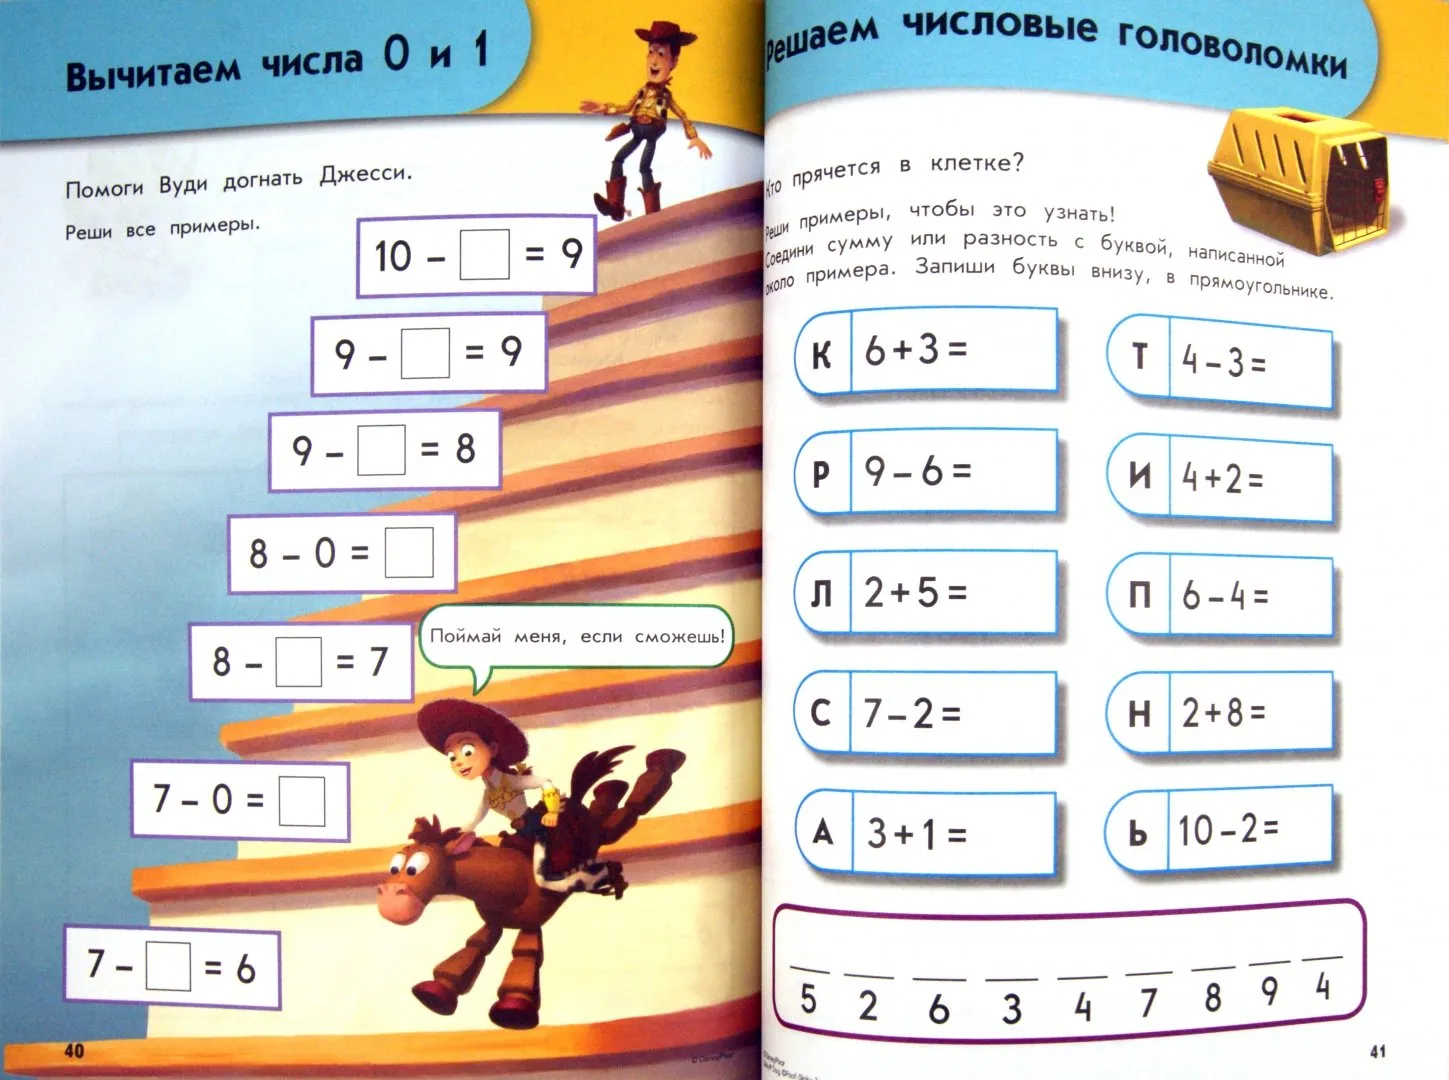 Примеры для детей детского сада. Задачи и примеры для детей 6-7 лет. Примеры для дошкольников 6-7 лет. Математика приметы для дошкольника 6 лет. Математические примеры для дошкольников.